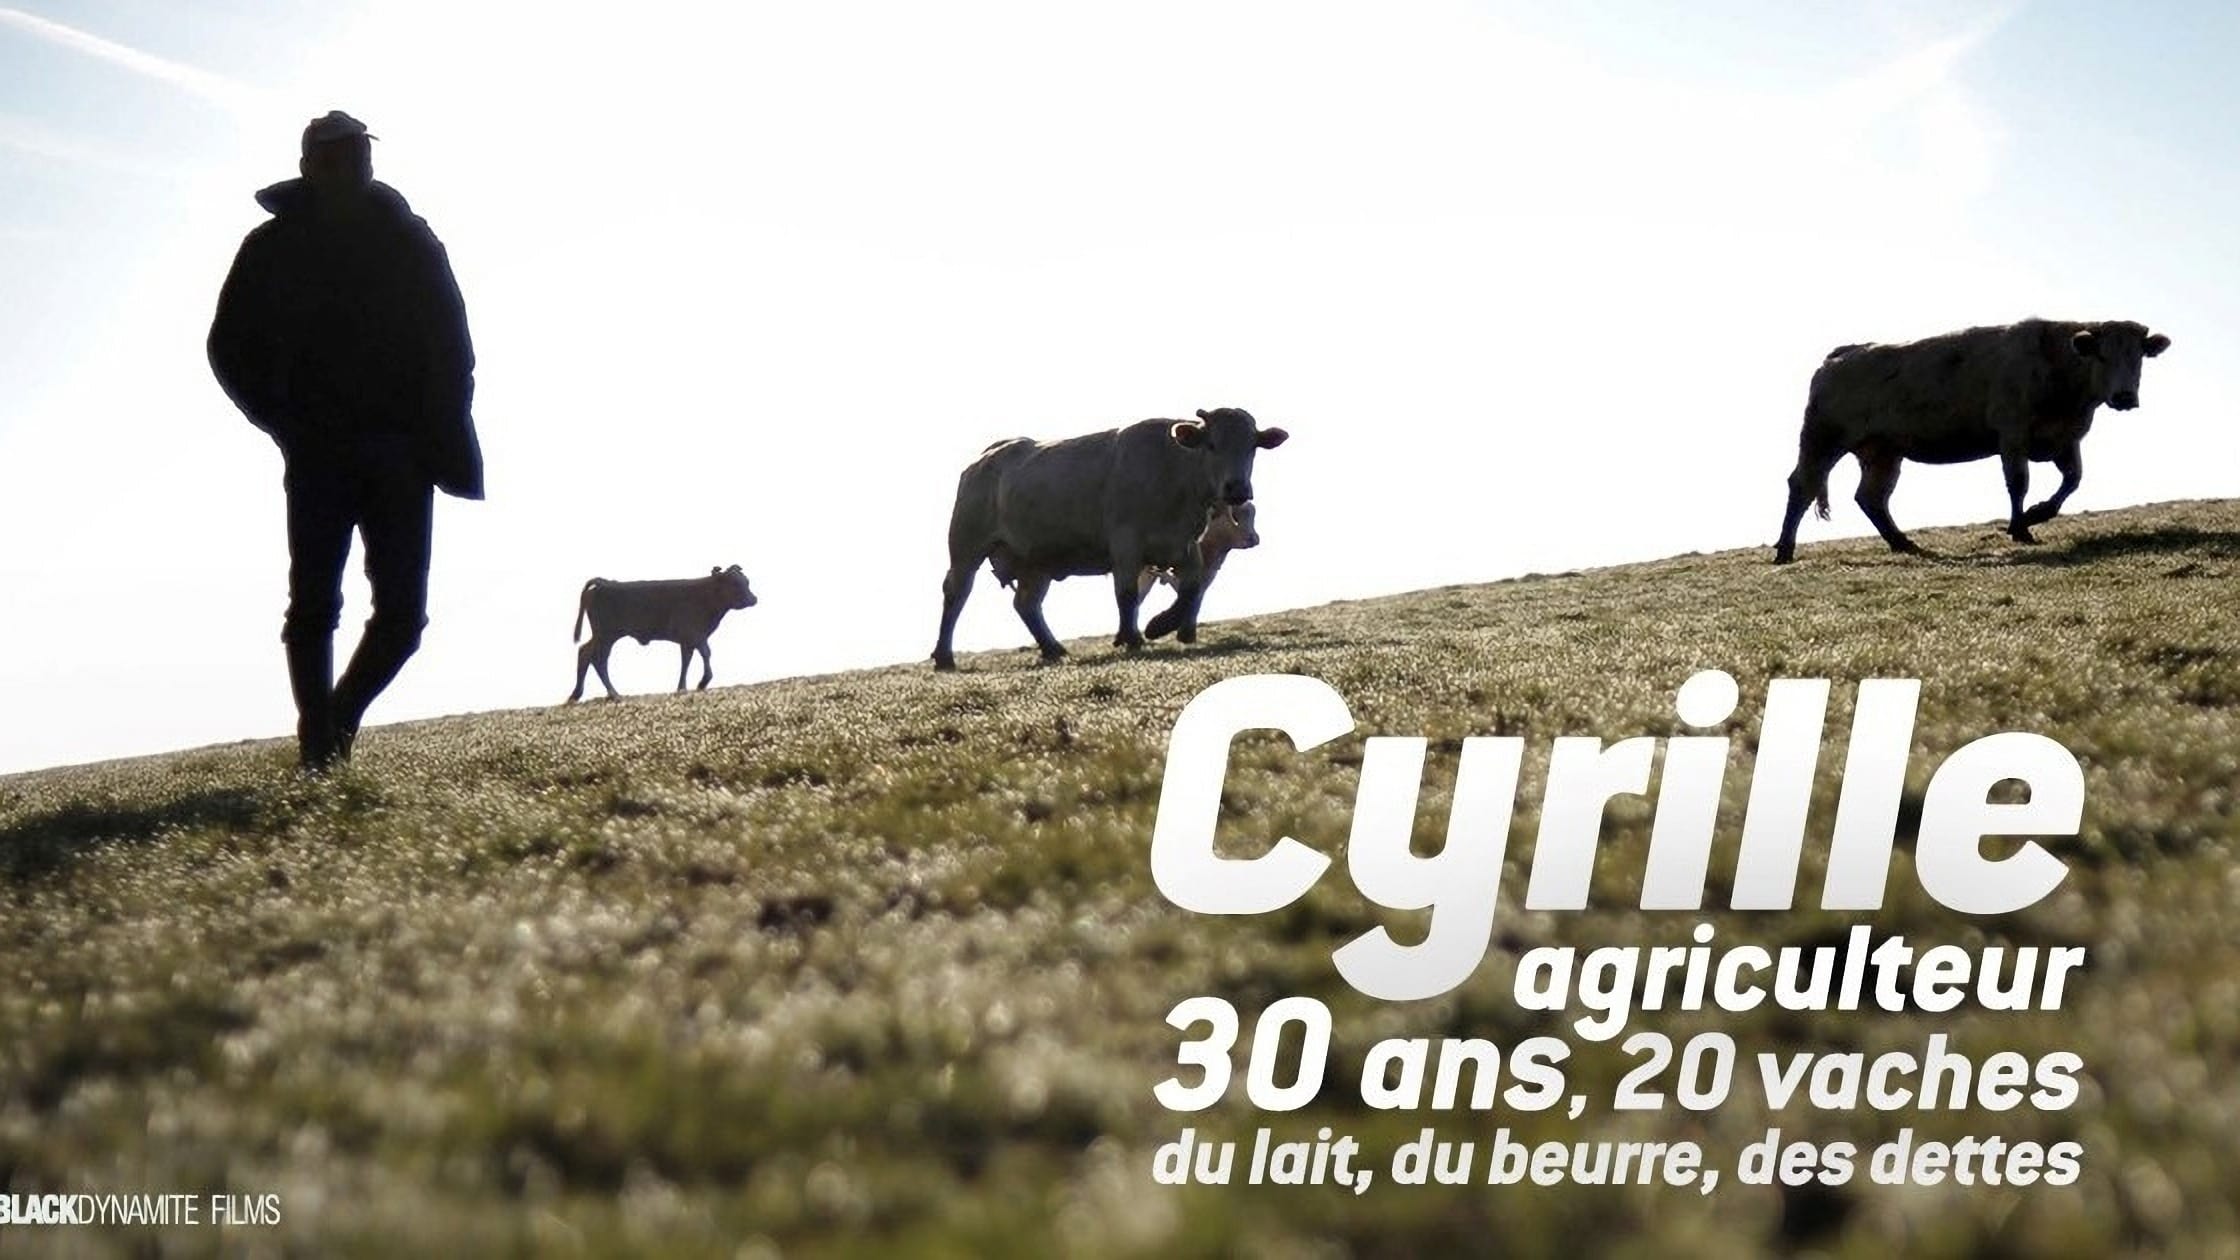 Image du film Cyrille, agriculteur, 30 ans, 20 vaches, du lait, du beurre, des dettes uwrec2guc4p4whj4rckqwfhtvdojpg